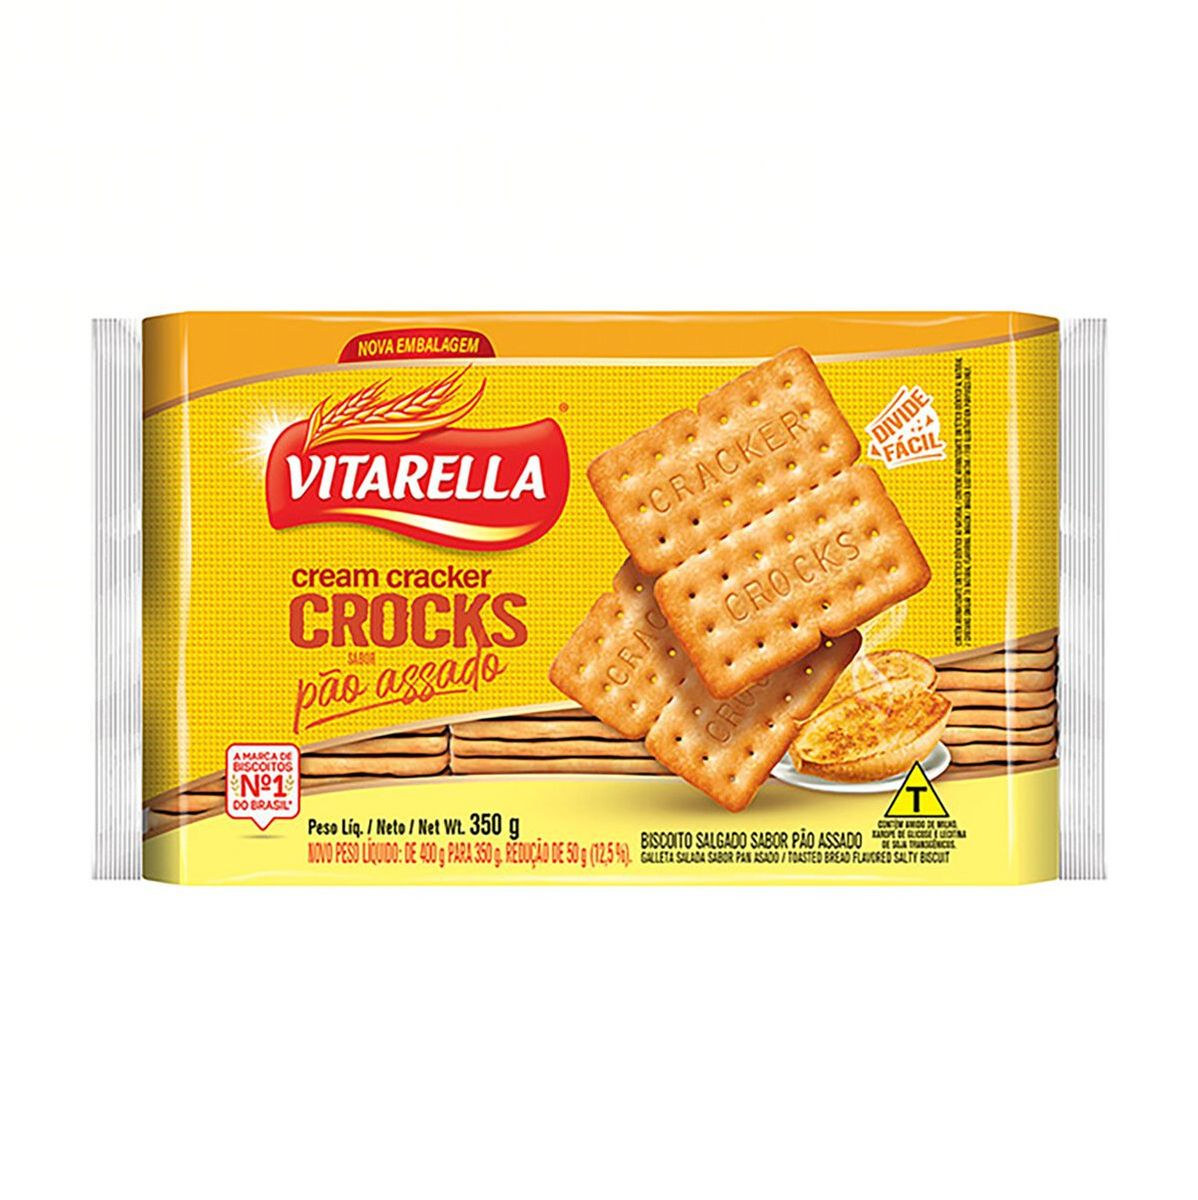 Biscoito Vitarella Cream Cracker Crocks Pão Assado 350g